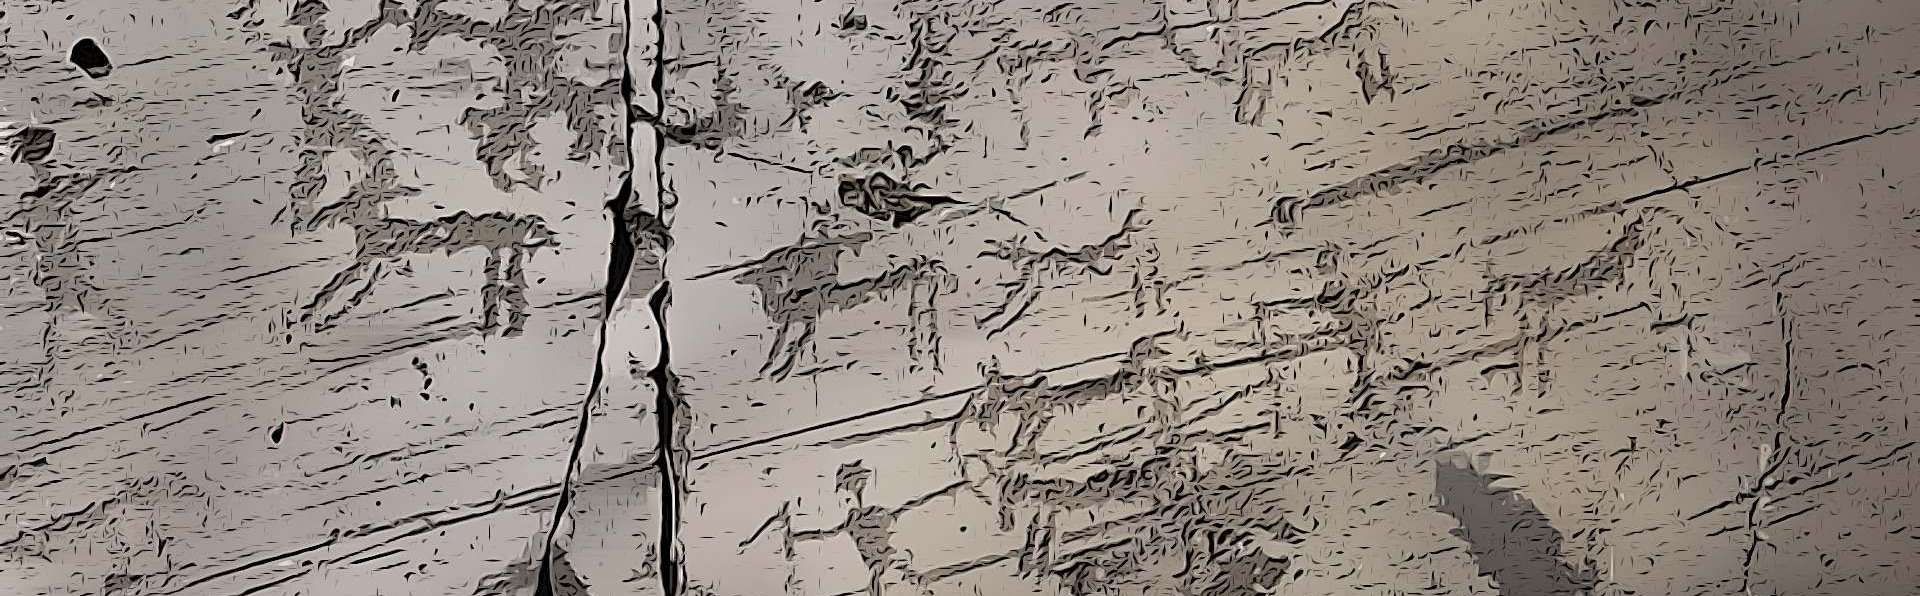 Torri del Benaco | Incisioni rupestri